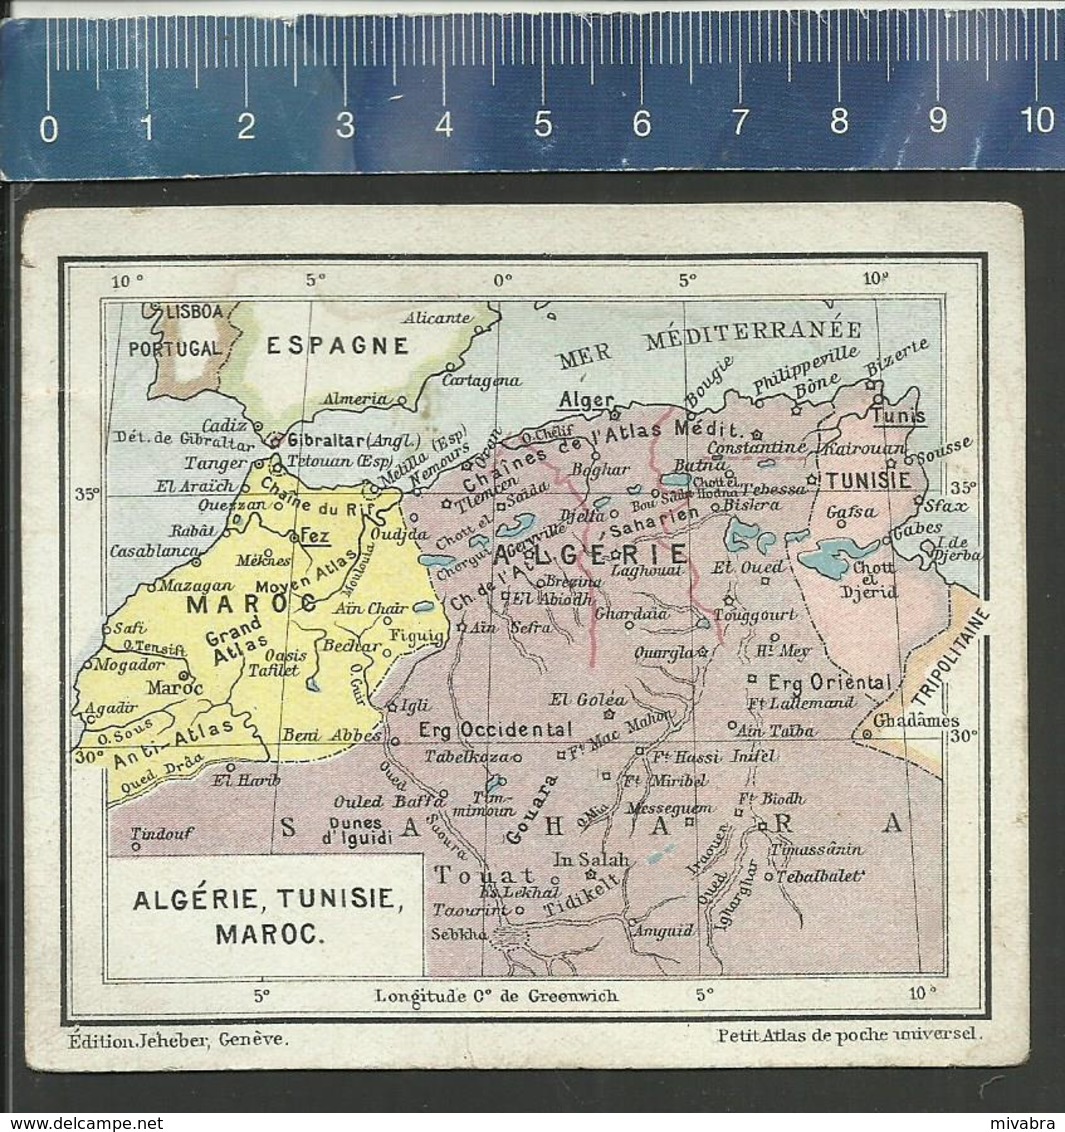 ALGÉRIE - TUNISIE - MAROC - CARTE ANCIENNE -  PETIT ATLAS DE POCHE UNIVERSEL ÉDITIONS JEHEBER GENÈVE - Geographical Maps